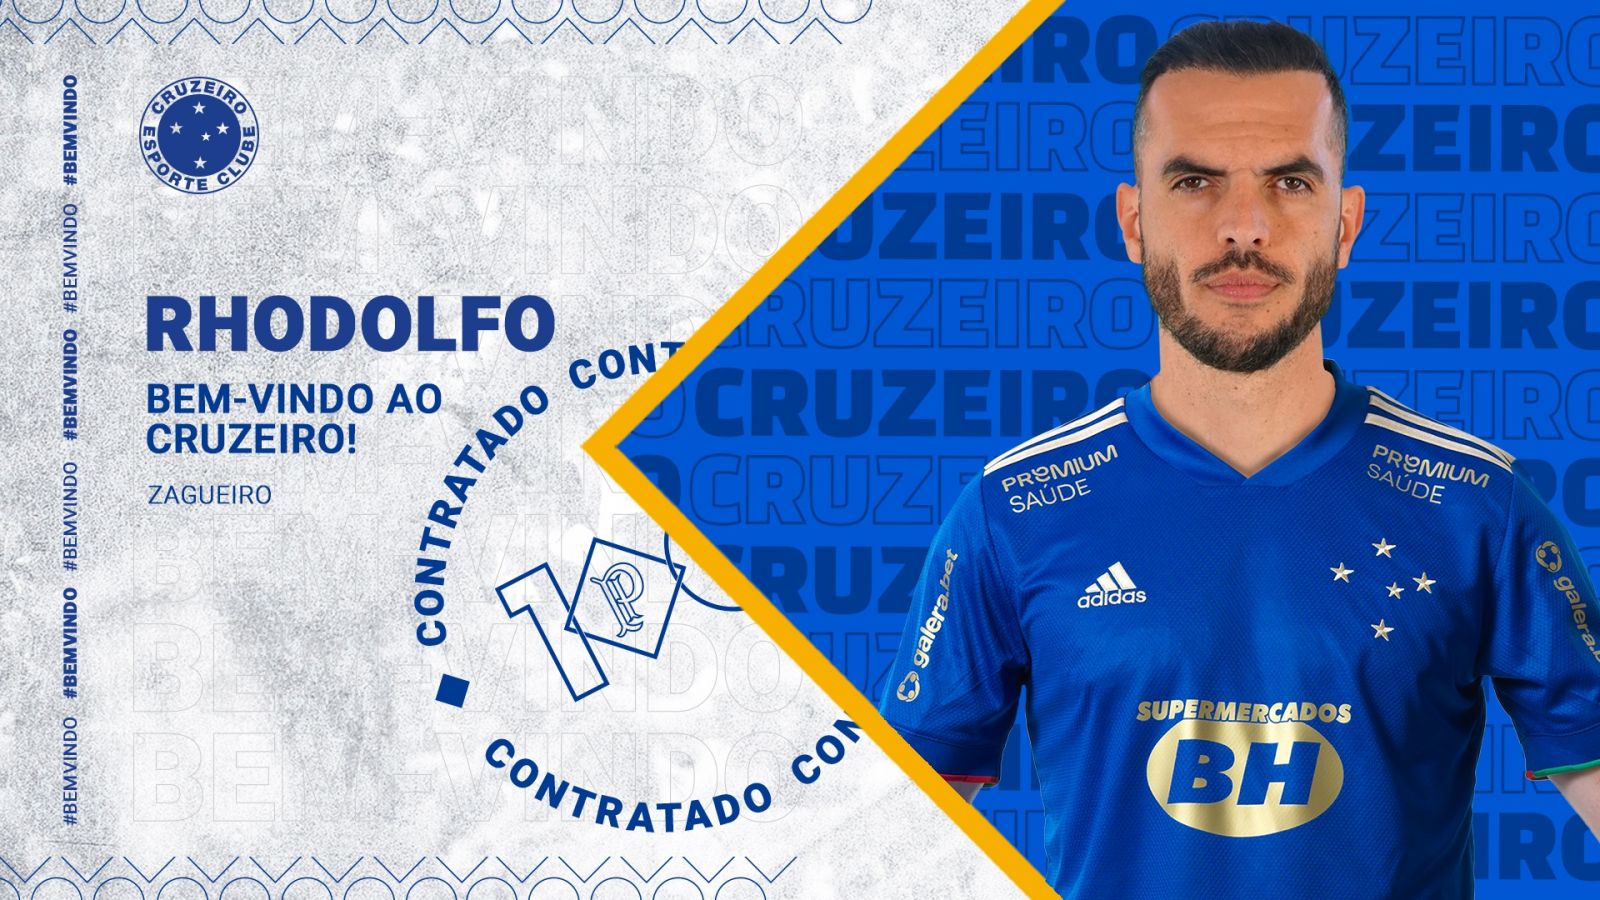 Com experiência e currículo repleto de títulos, Rhodolfo chega ao Cruzeiro para reforçar a defesa celeste  